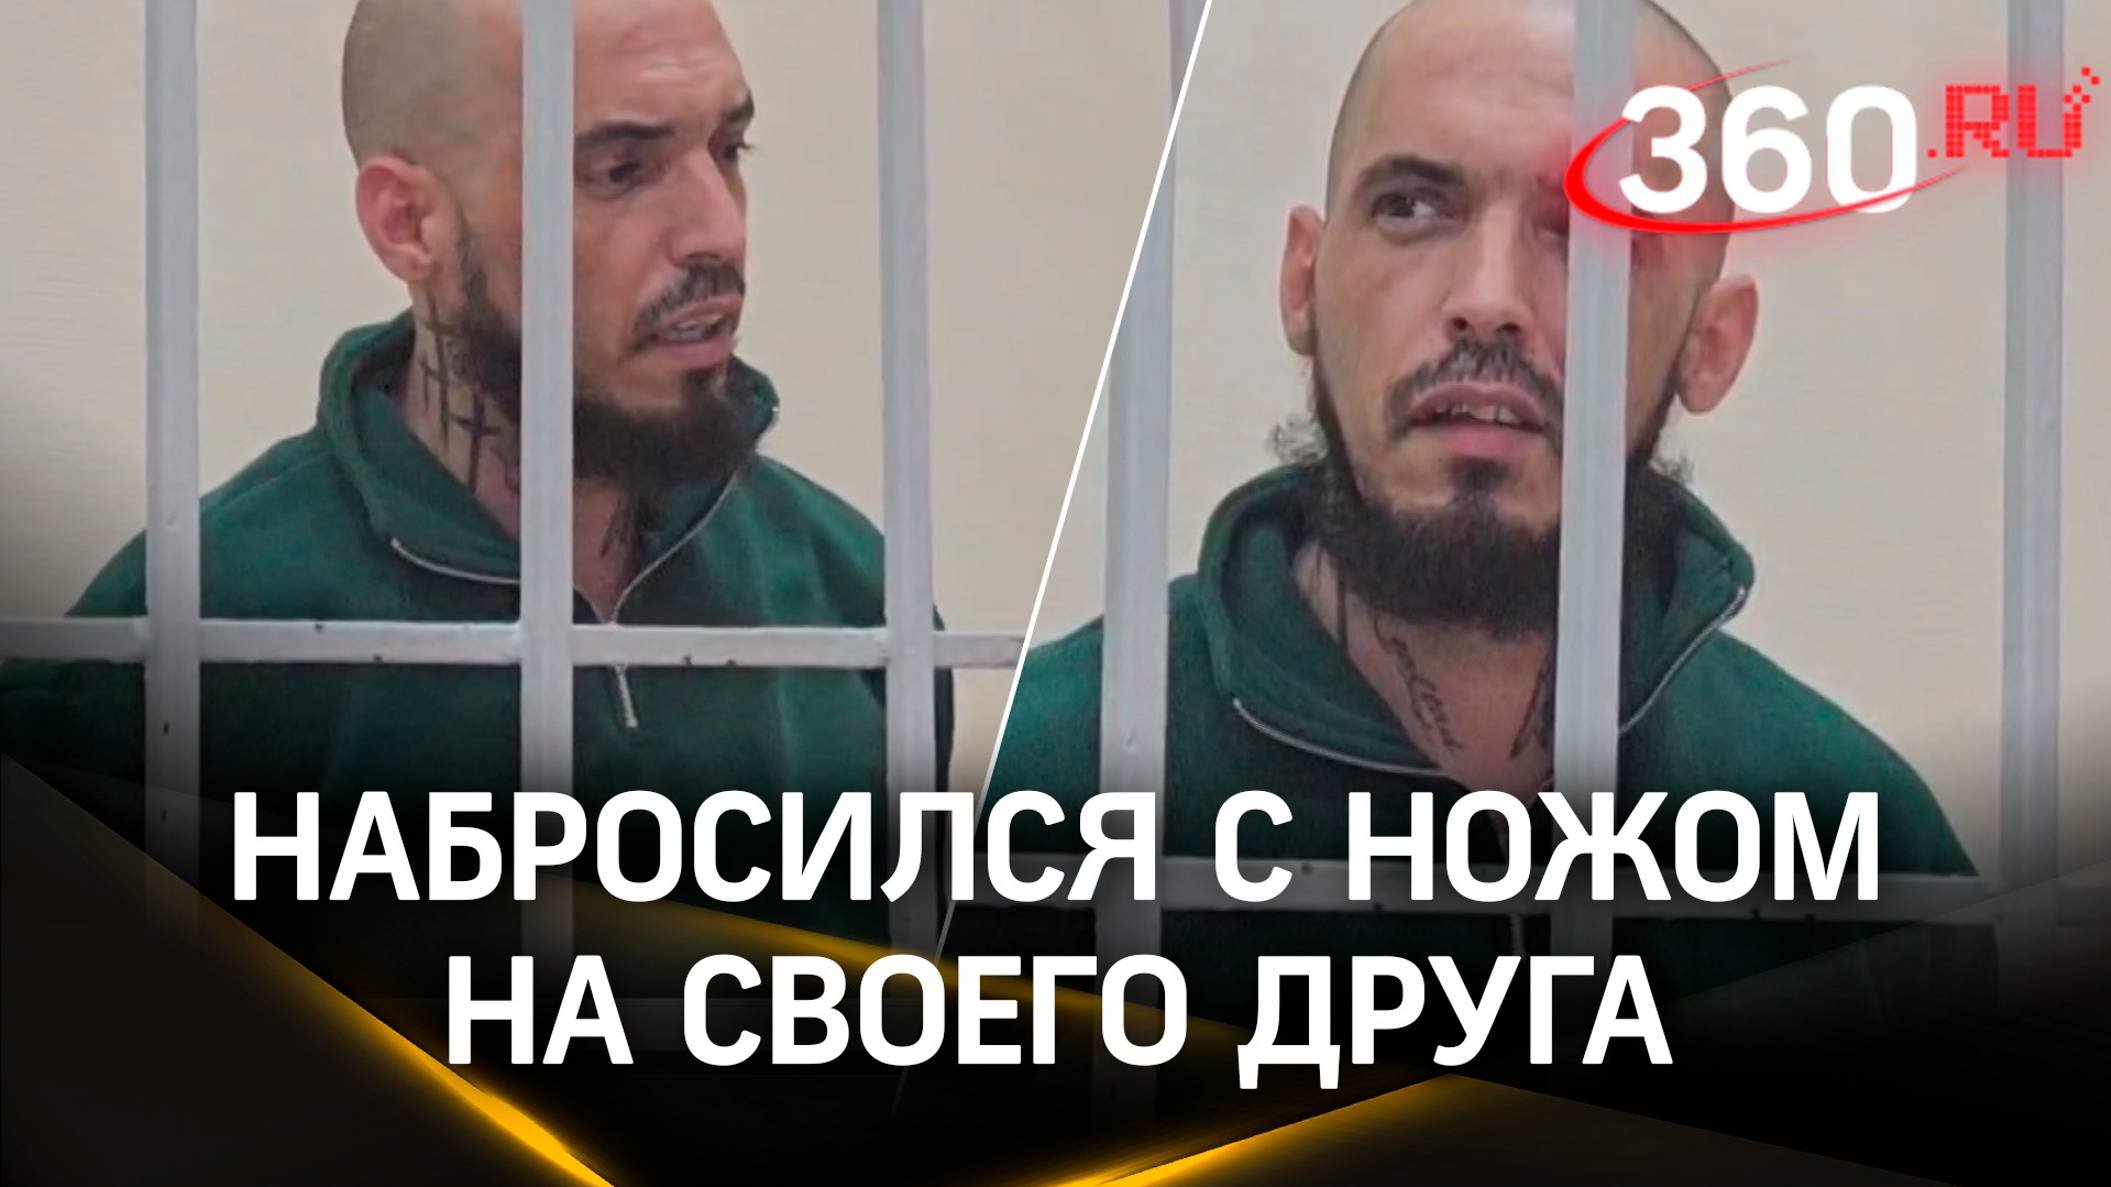 Перед судом предстал кубинец, изрезавший друга в Подмосковье